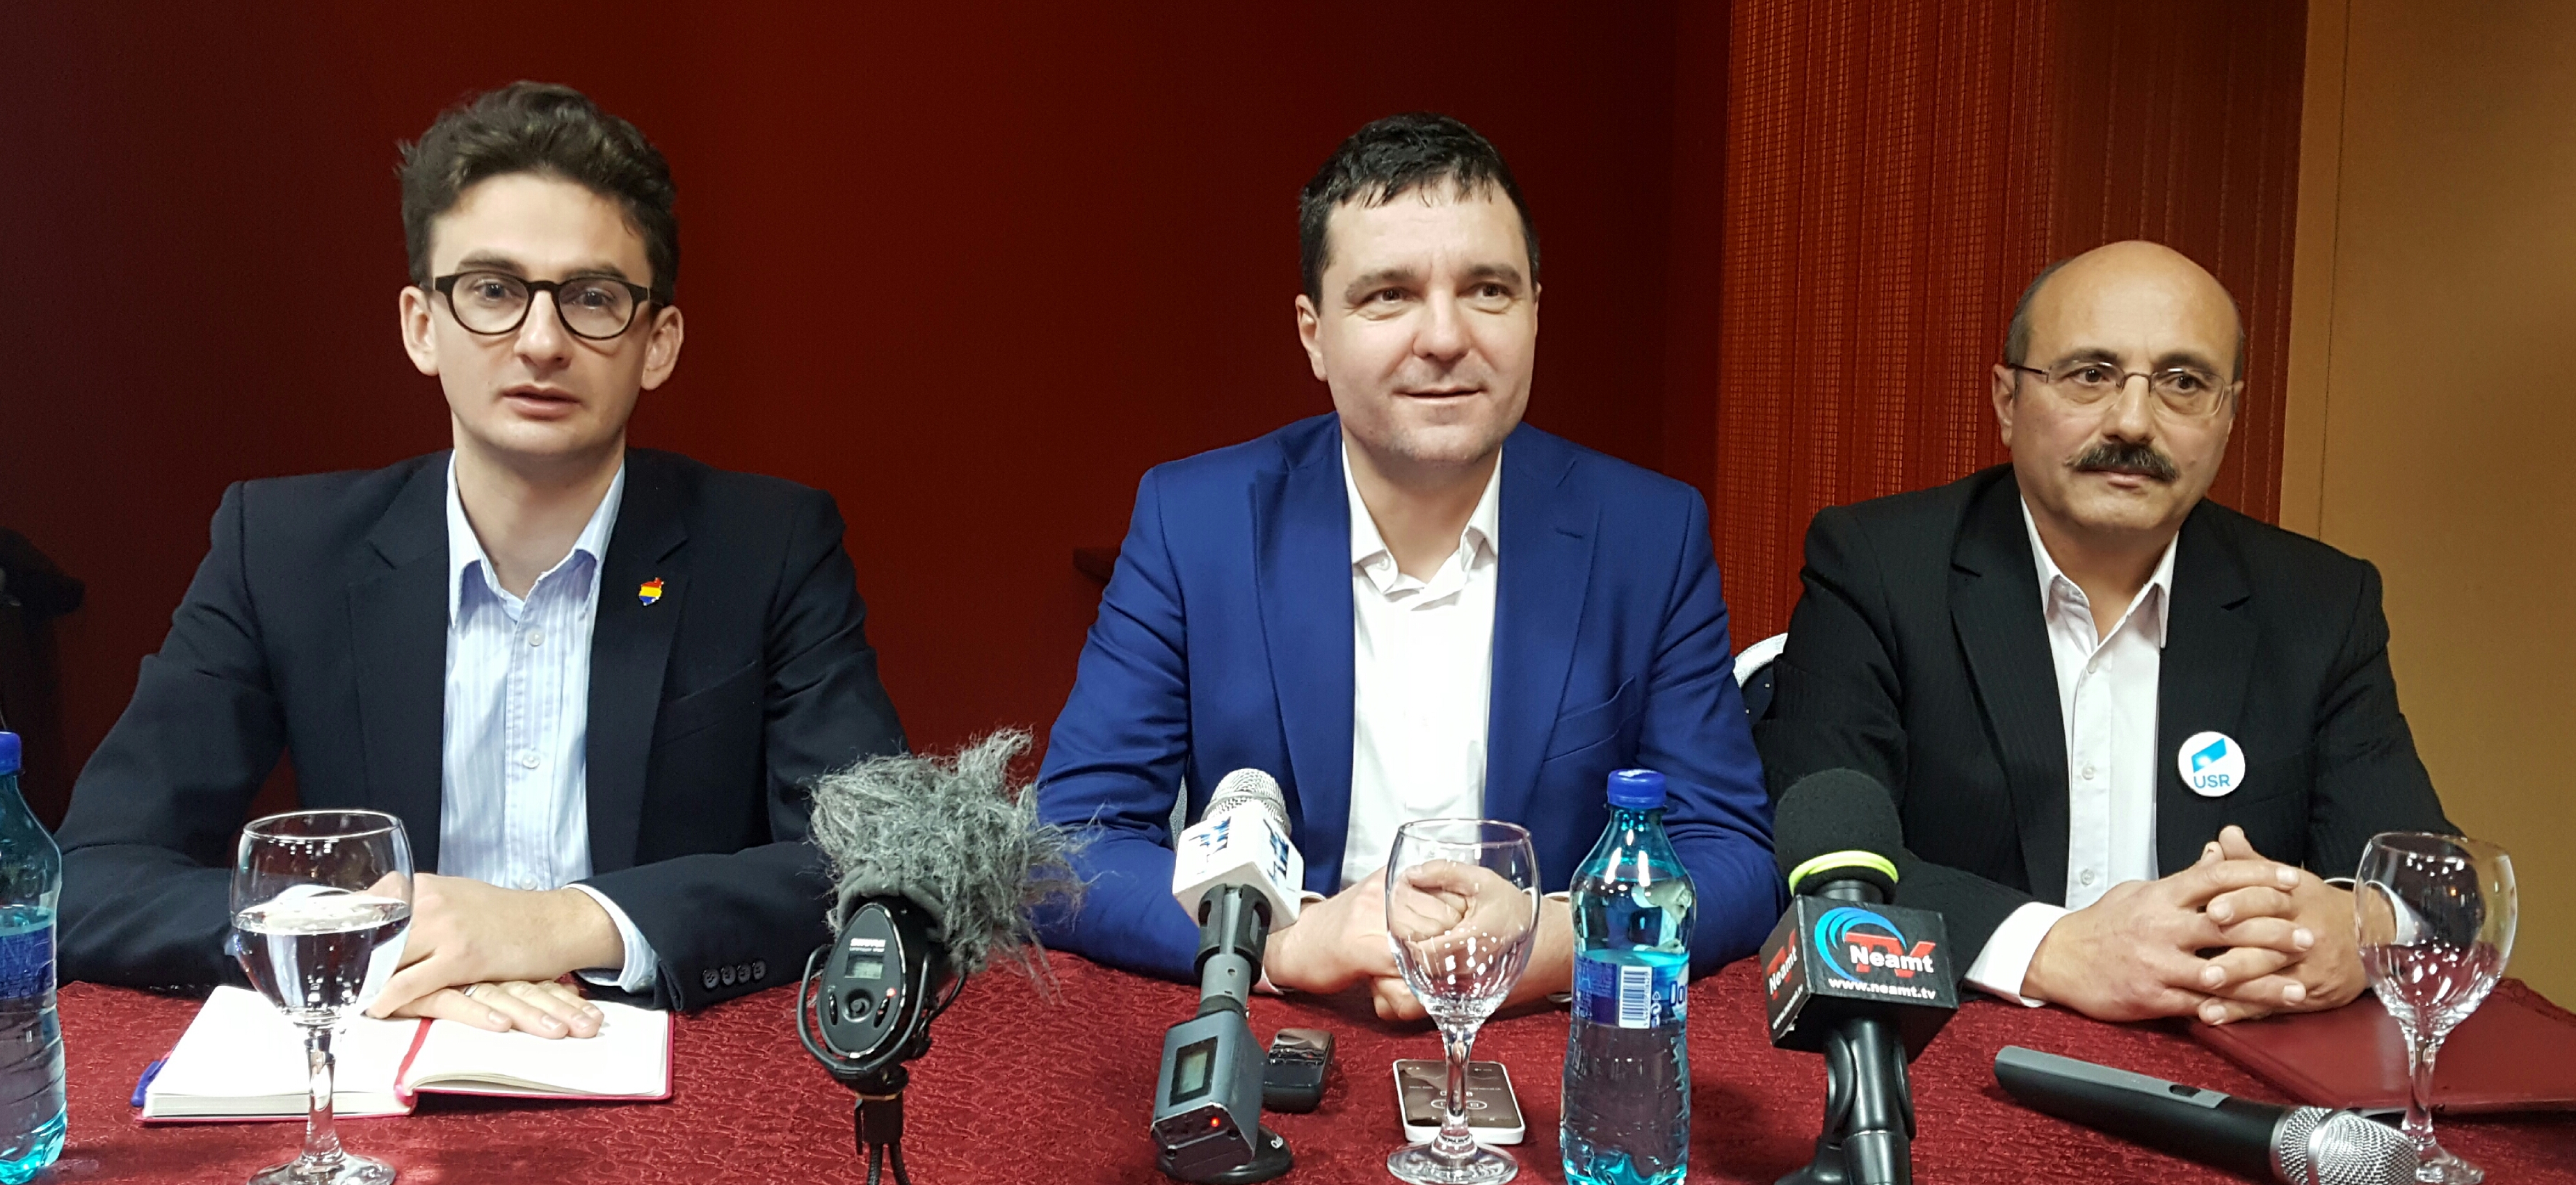 USR își lansează candidatul la Primăria municipiului Roman în prezența președintelui Nicușor Dan